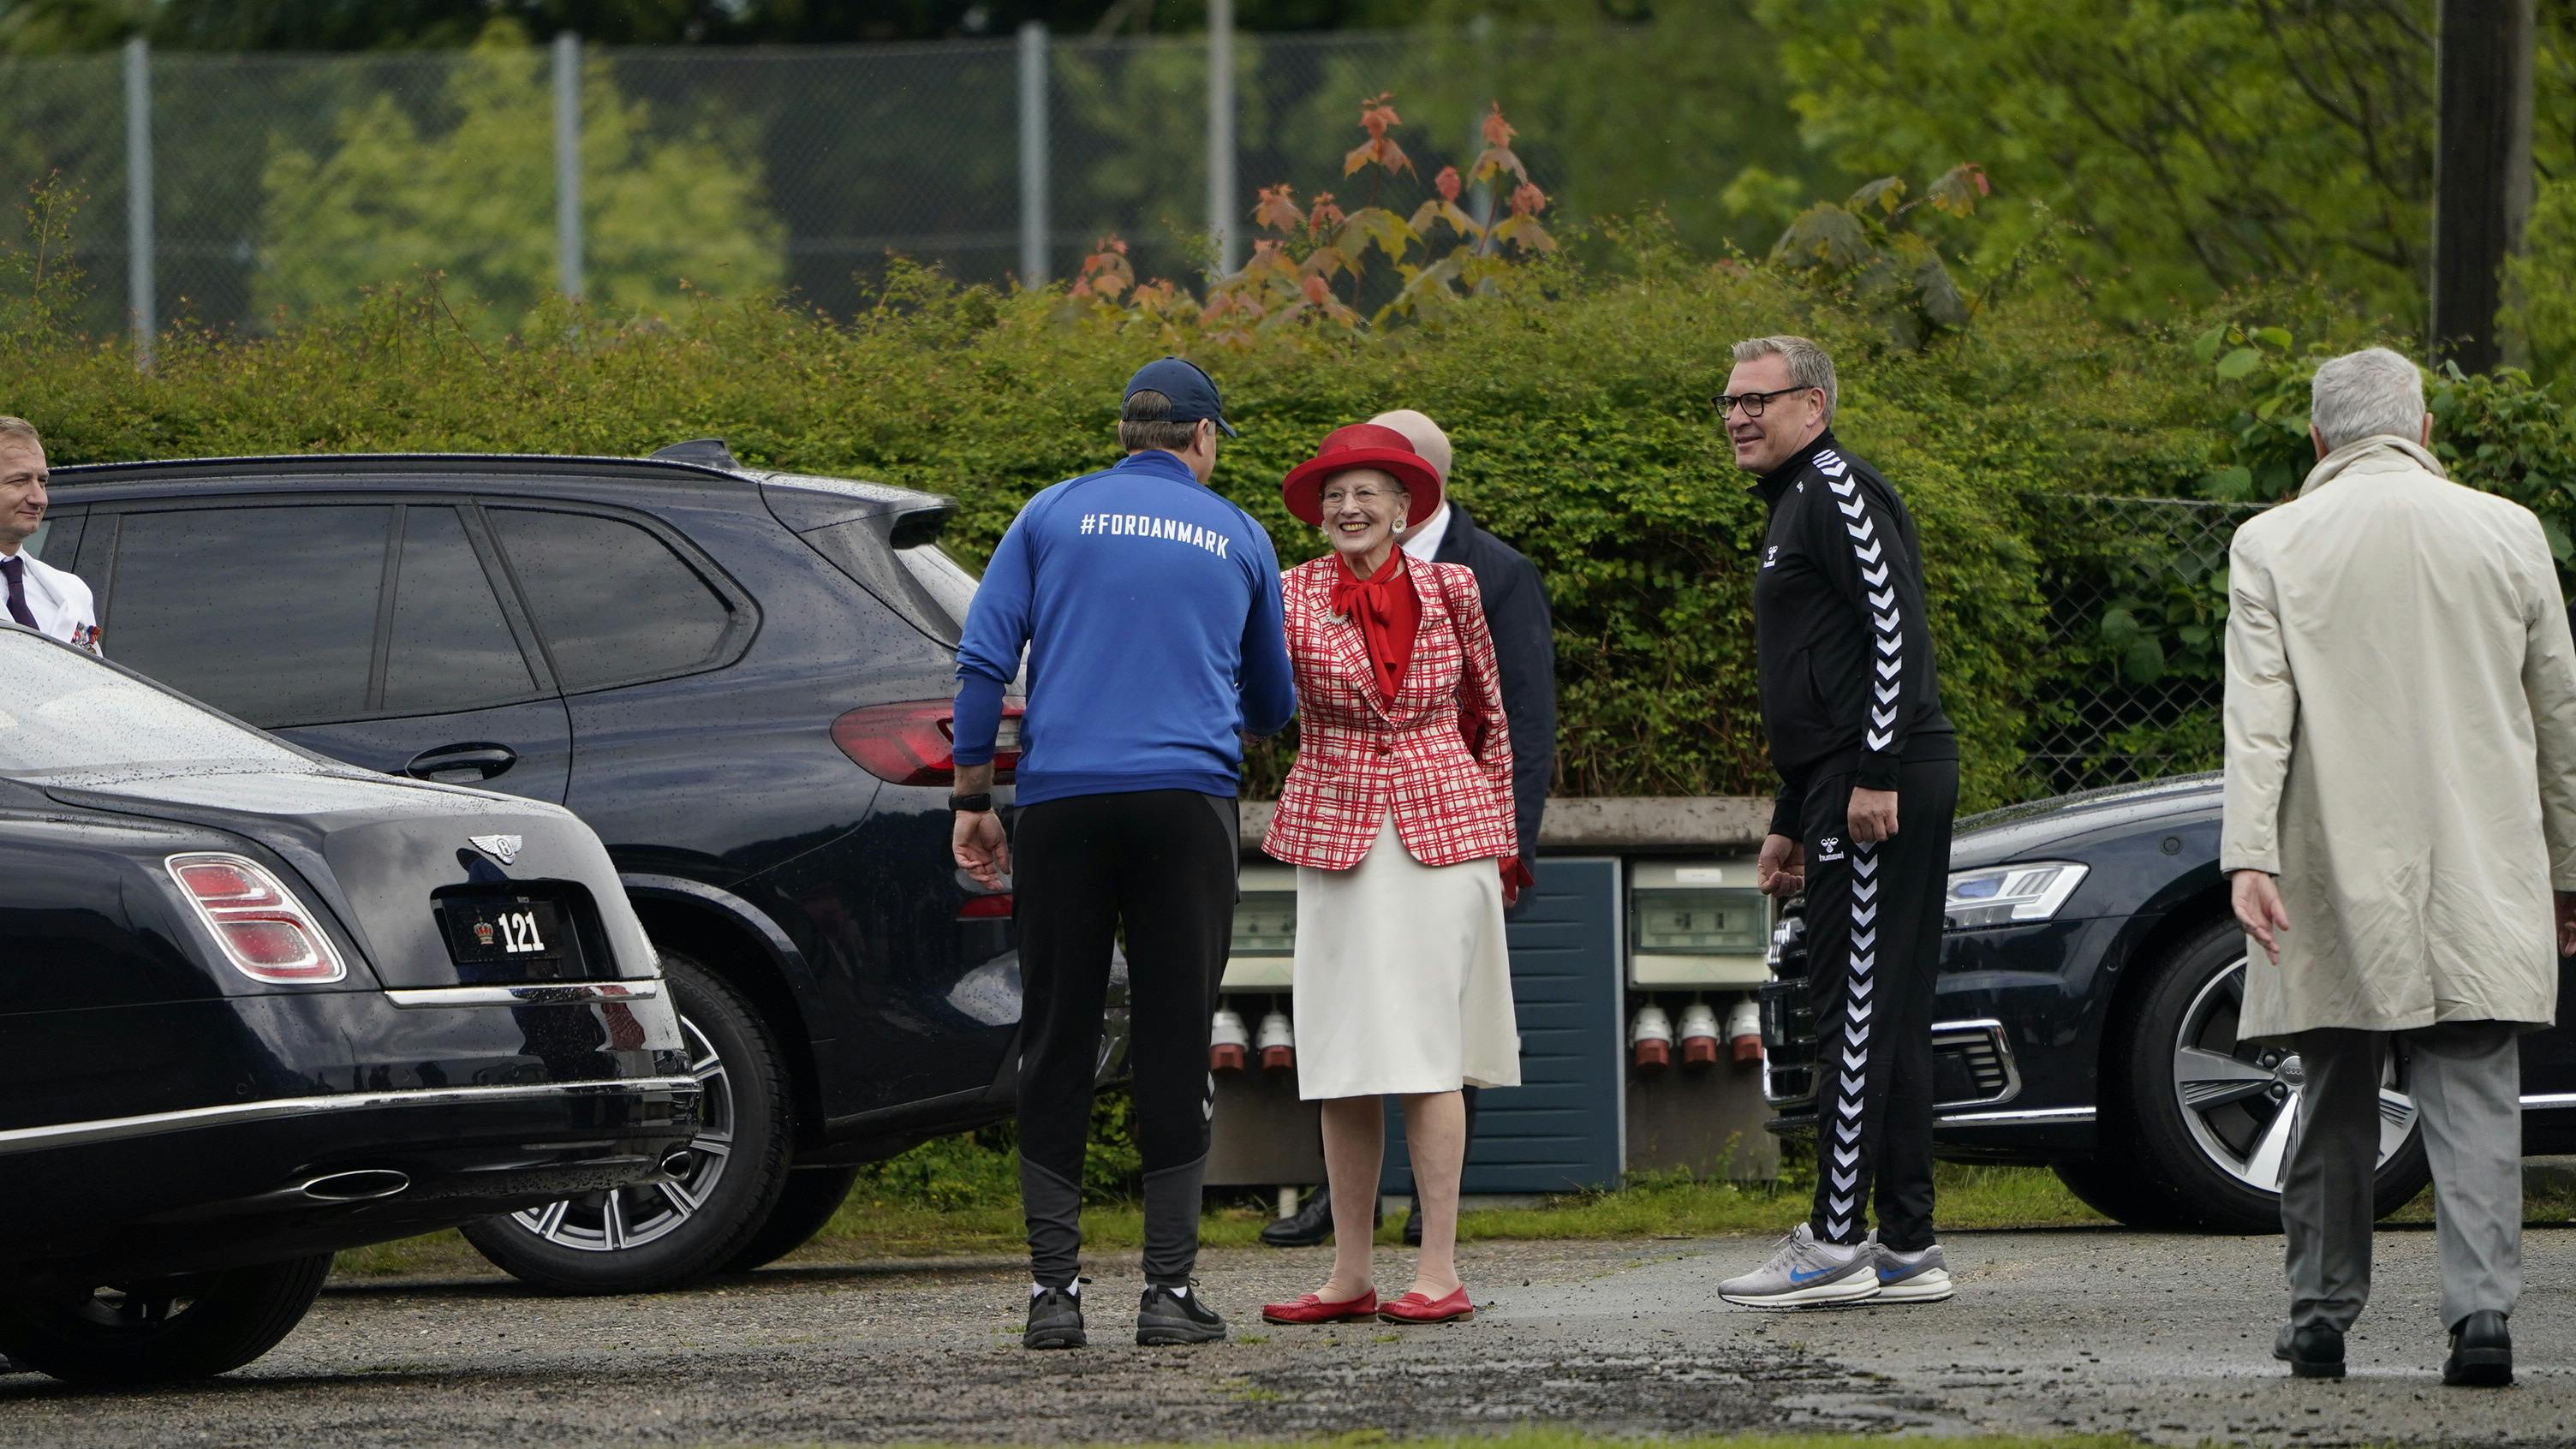 Landsholdet fik fint besøg af dronningen